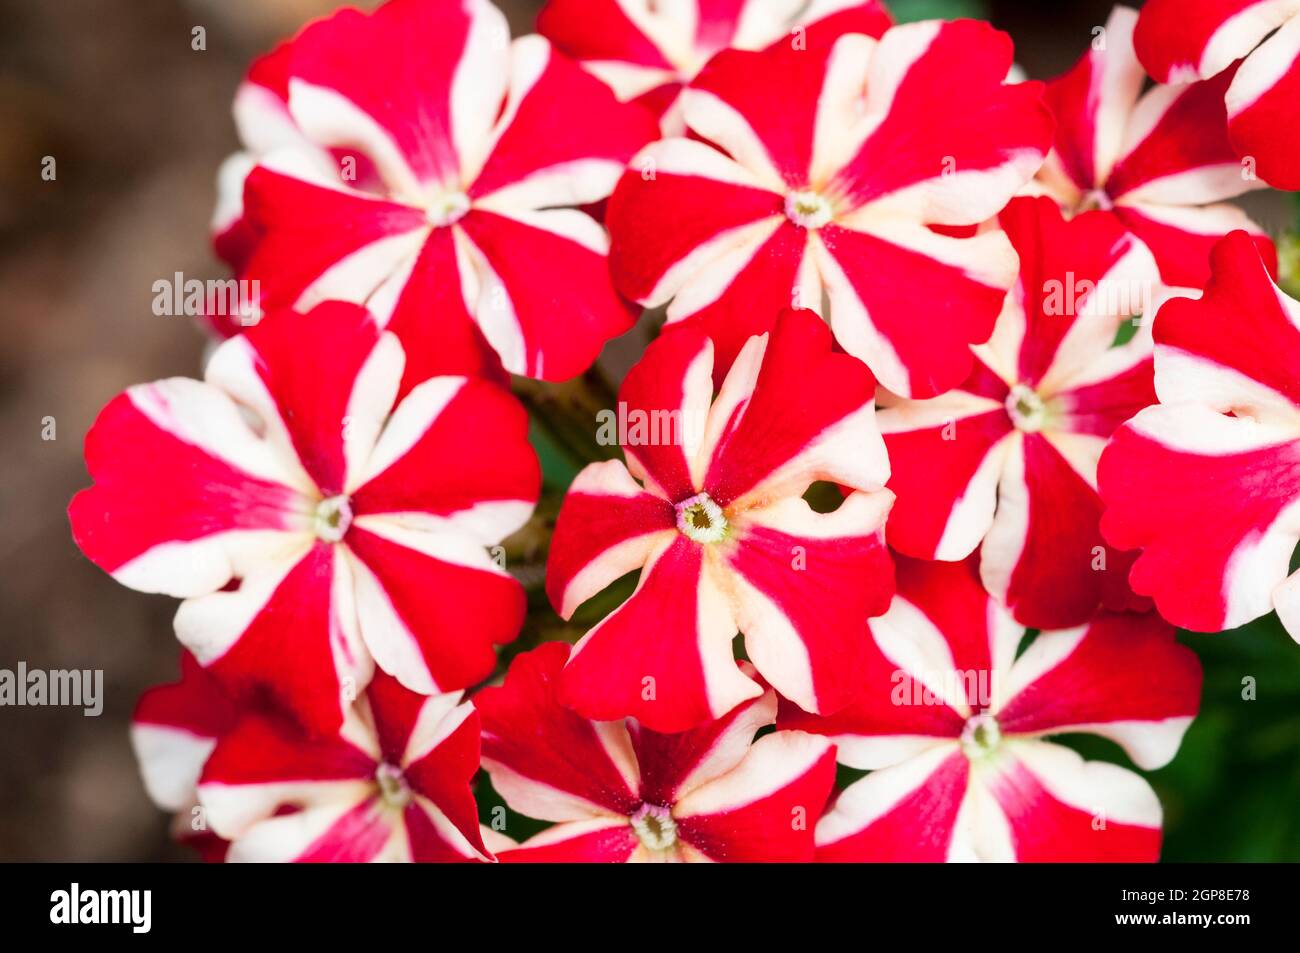 Verbena Voodoo Red Star Una flor roja y blanca bicolor. Un verano floreciendo medio robusto que se extiende anualmente Foto de stock